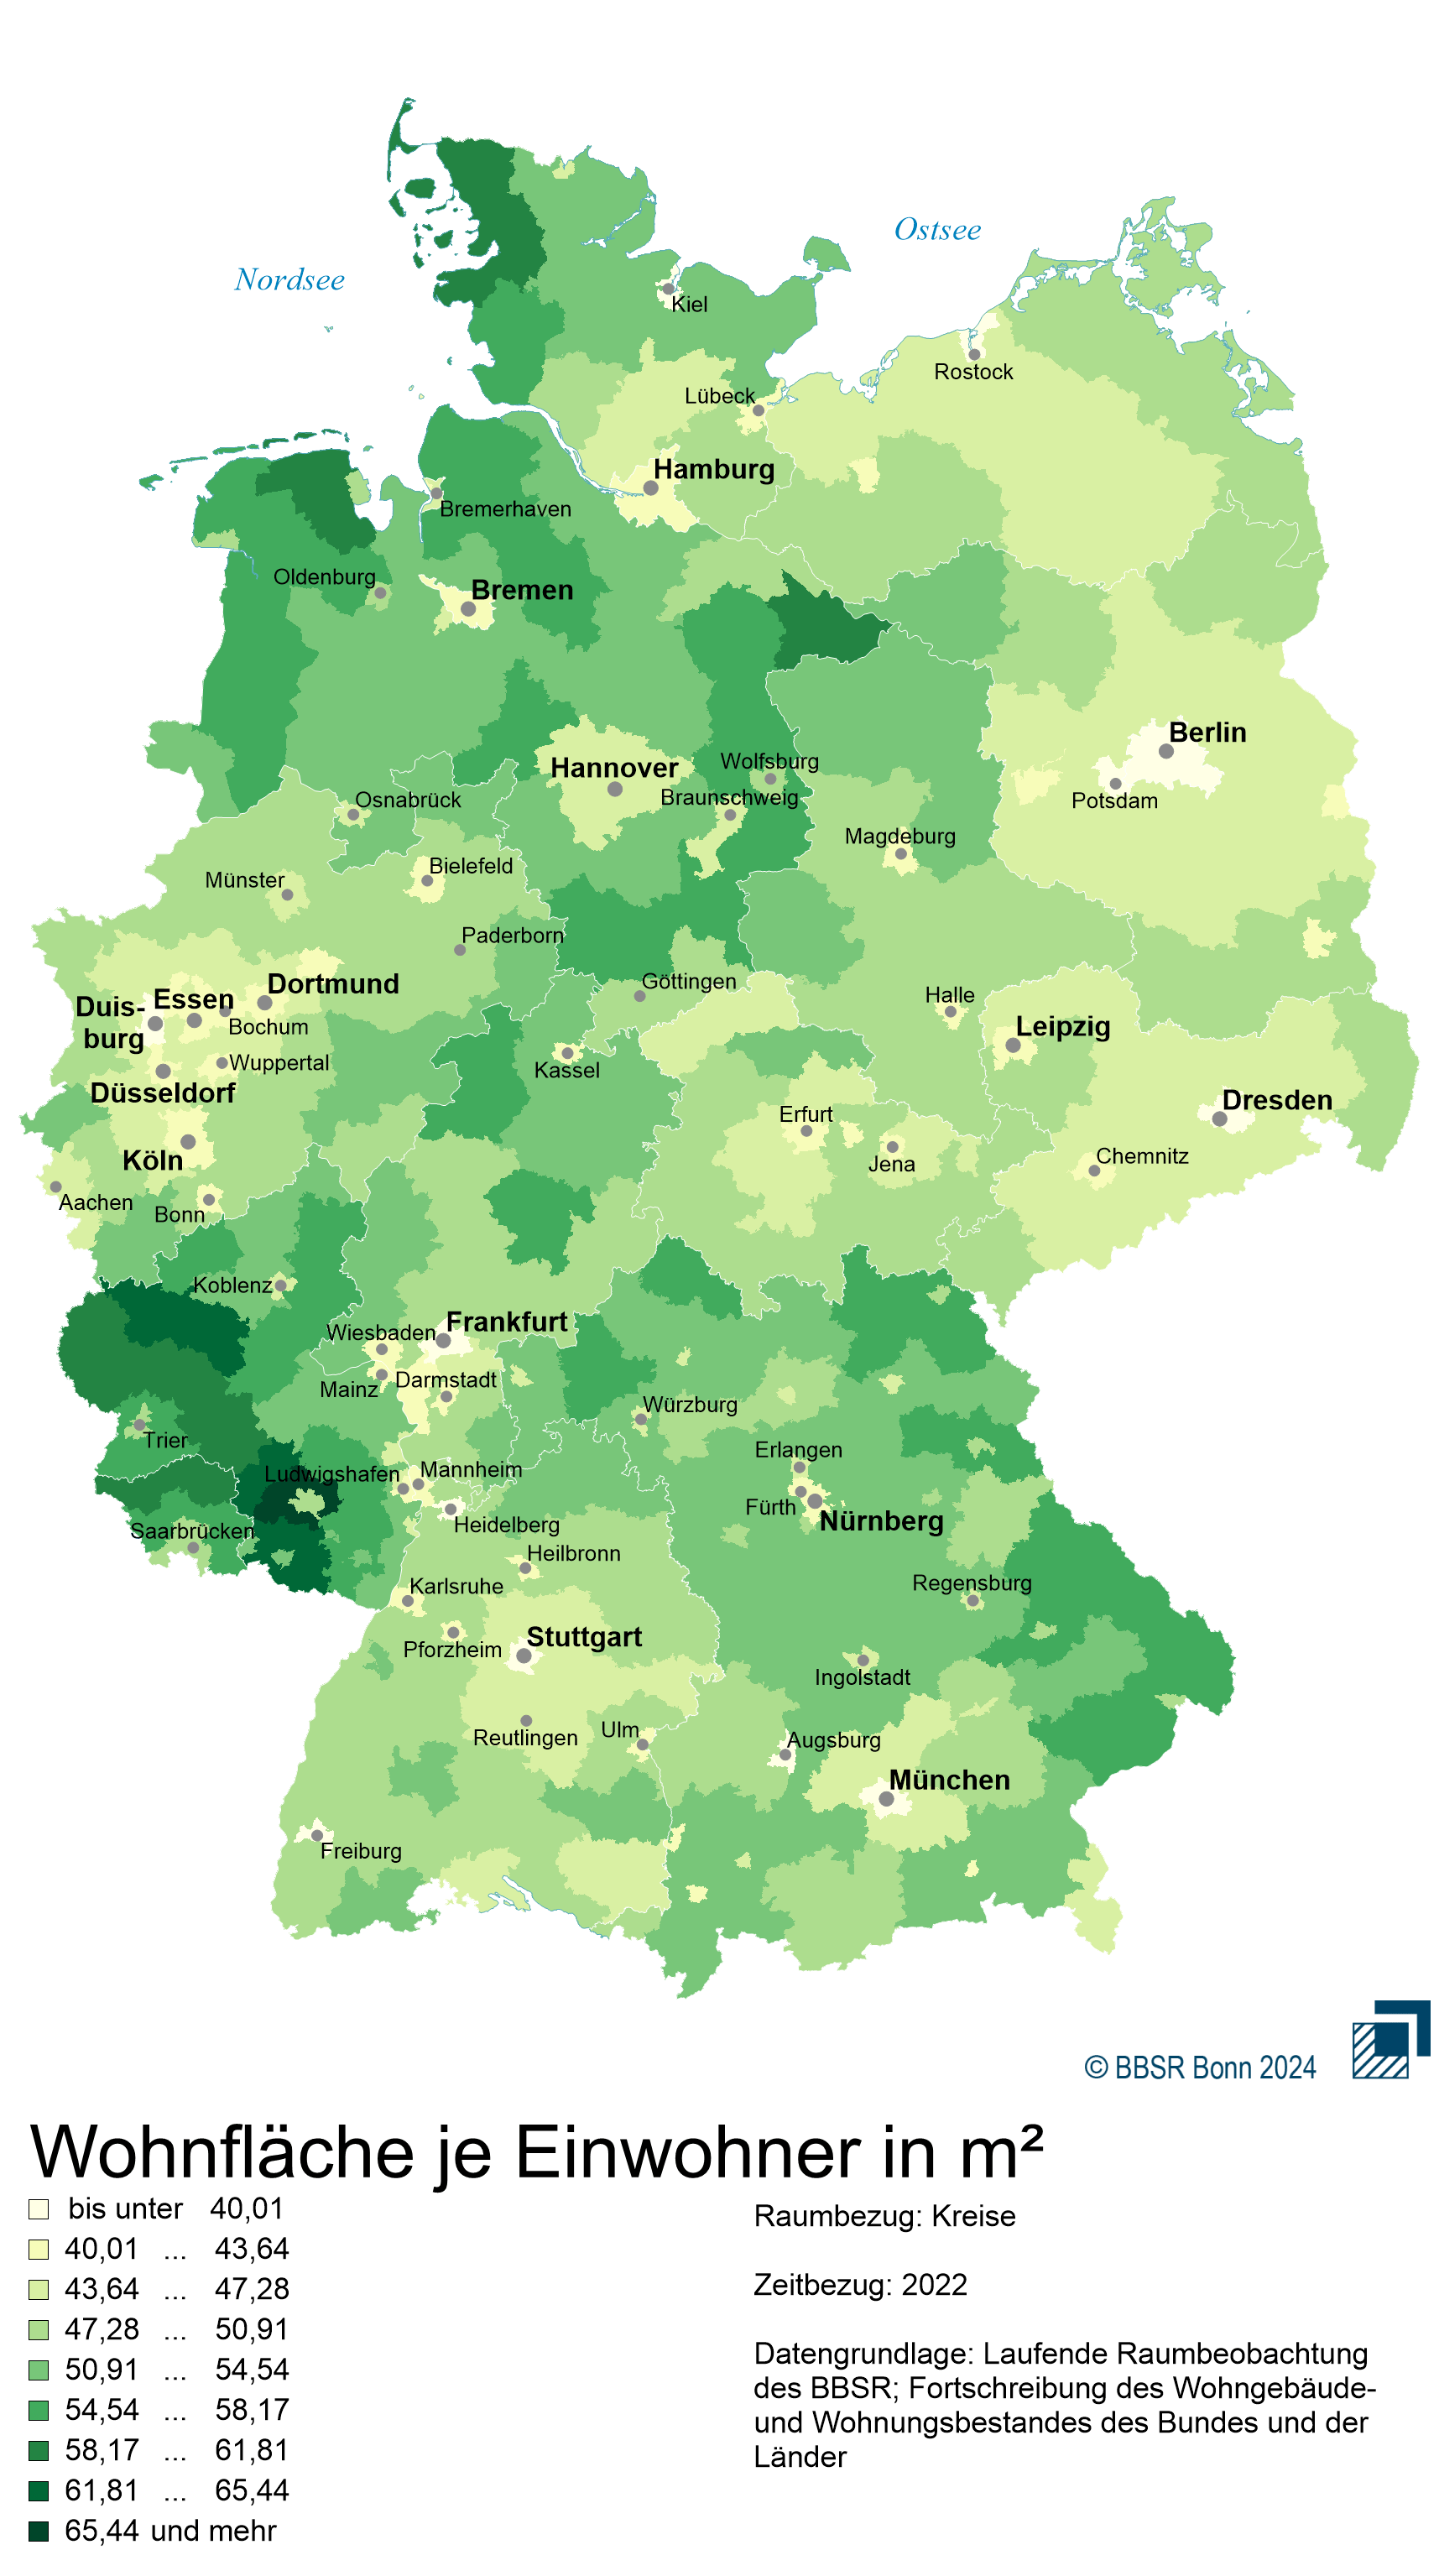 Die Deutschlandkarte zeigt: In den Großstädten haben die Menschen tendenziell weniger Platz.